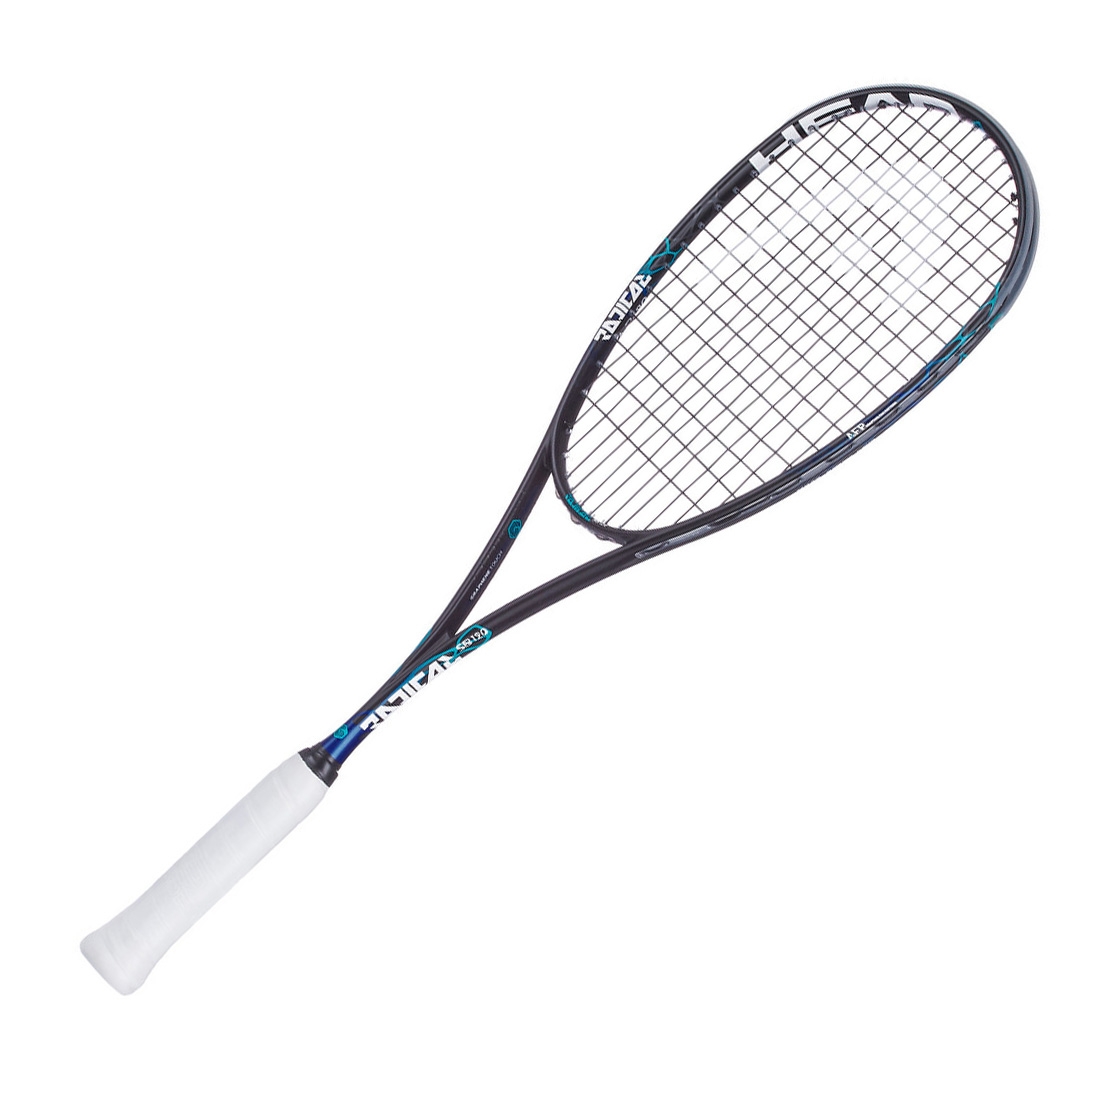 Head Graphene Touch Radical 120 Slimbody Squash racket